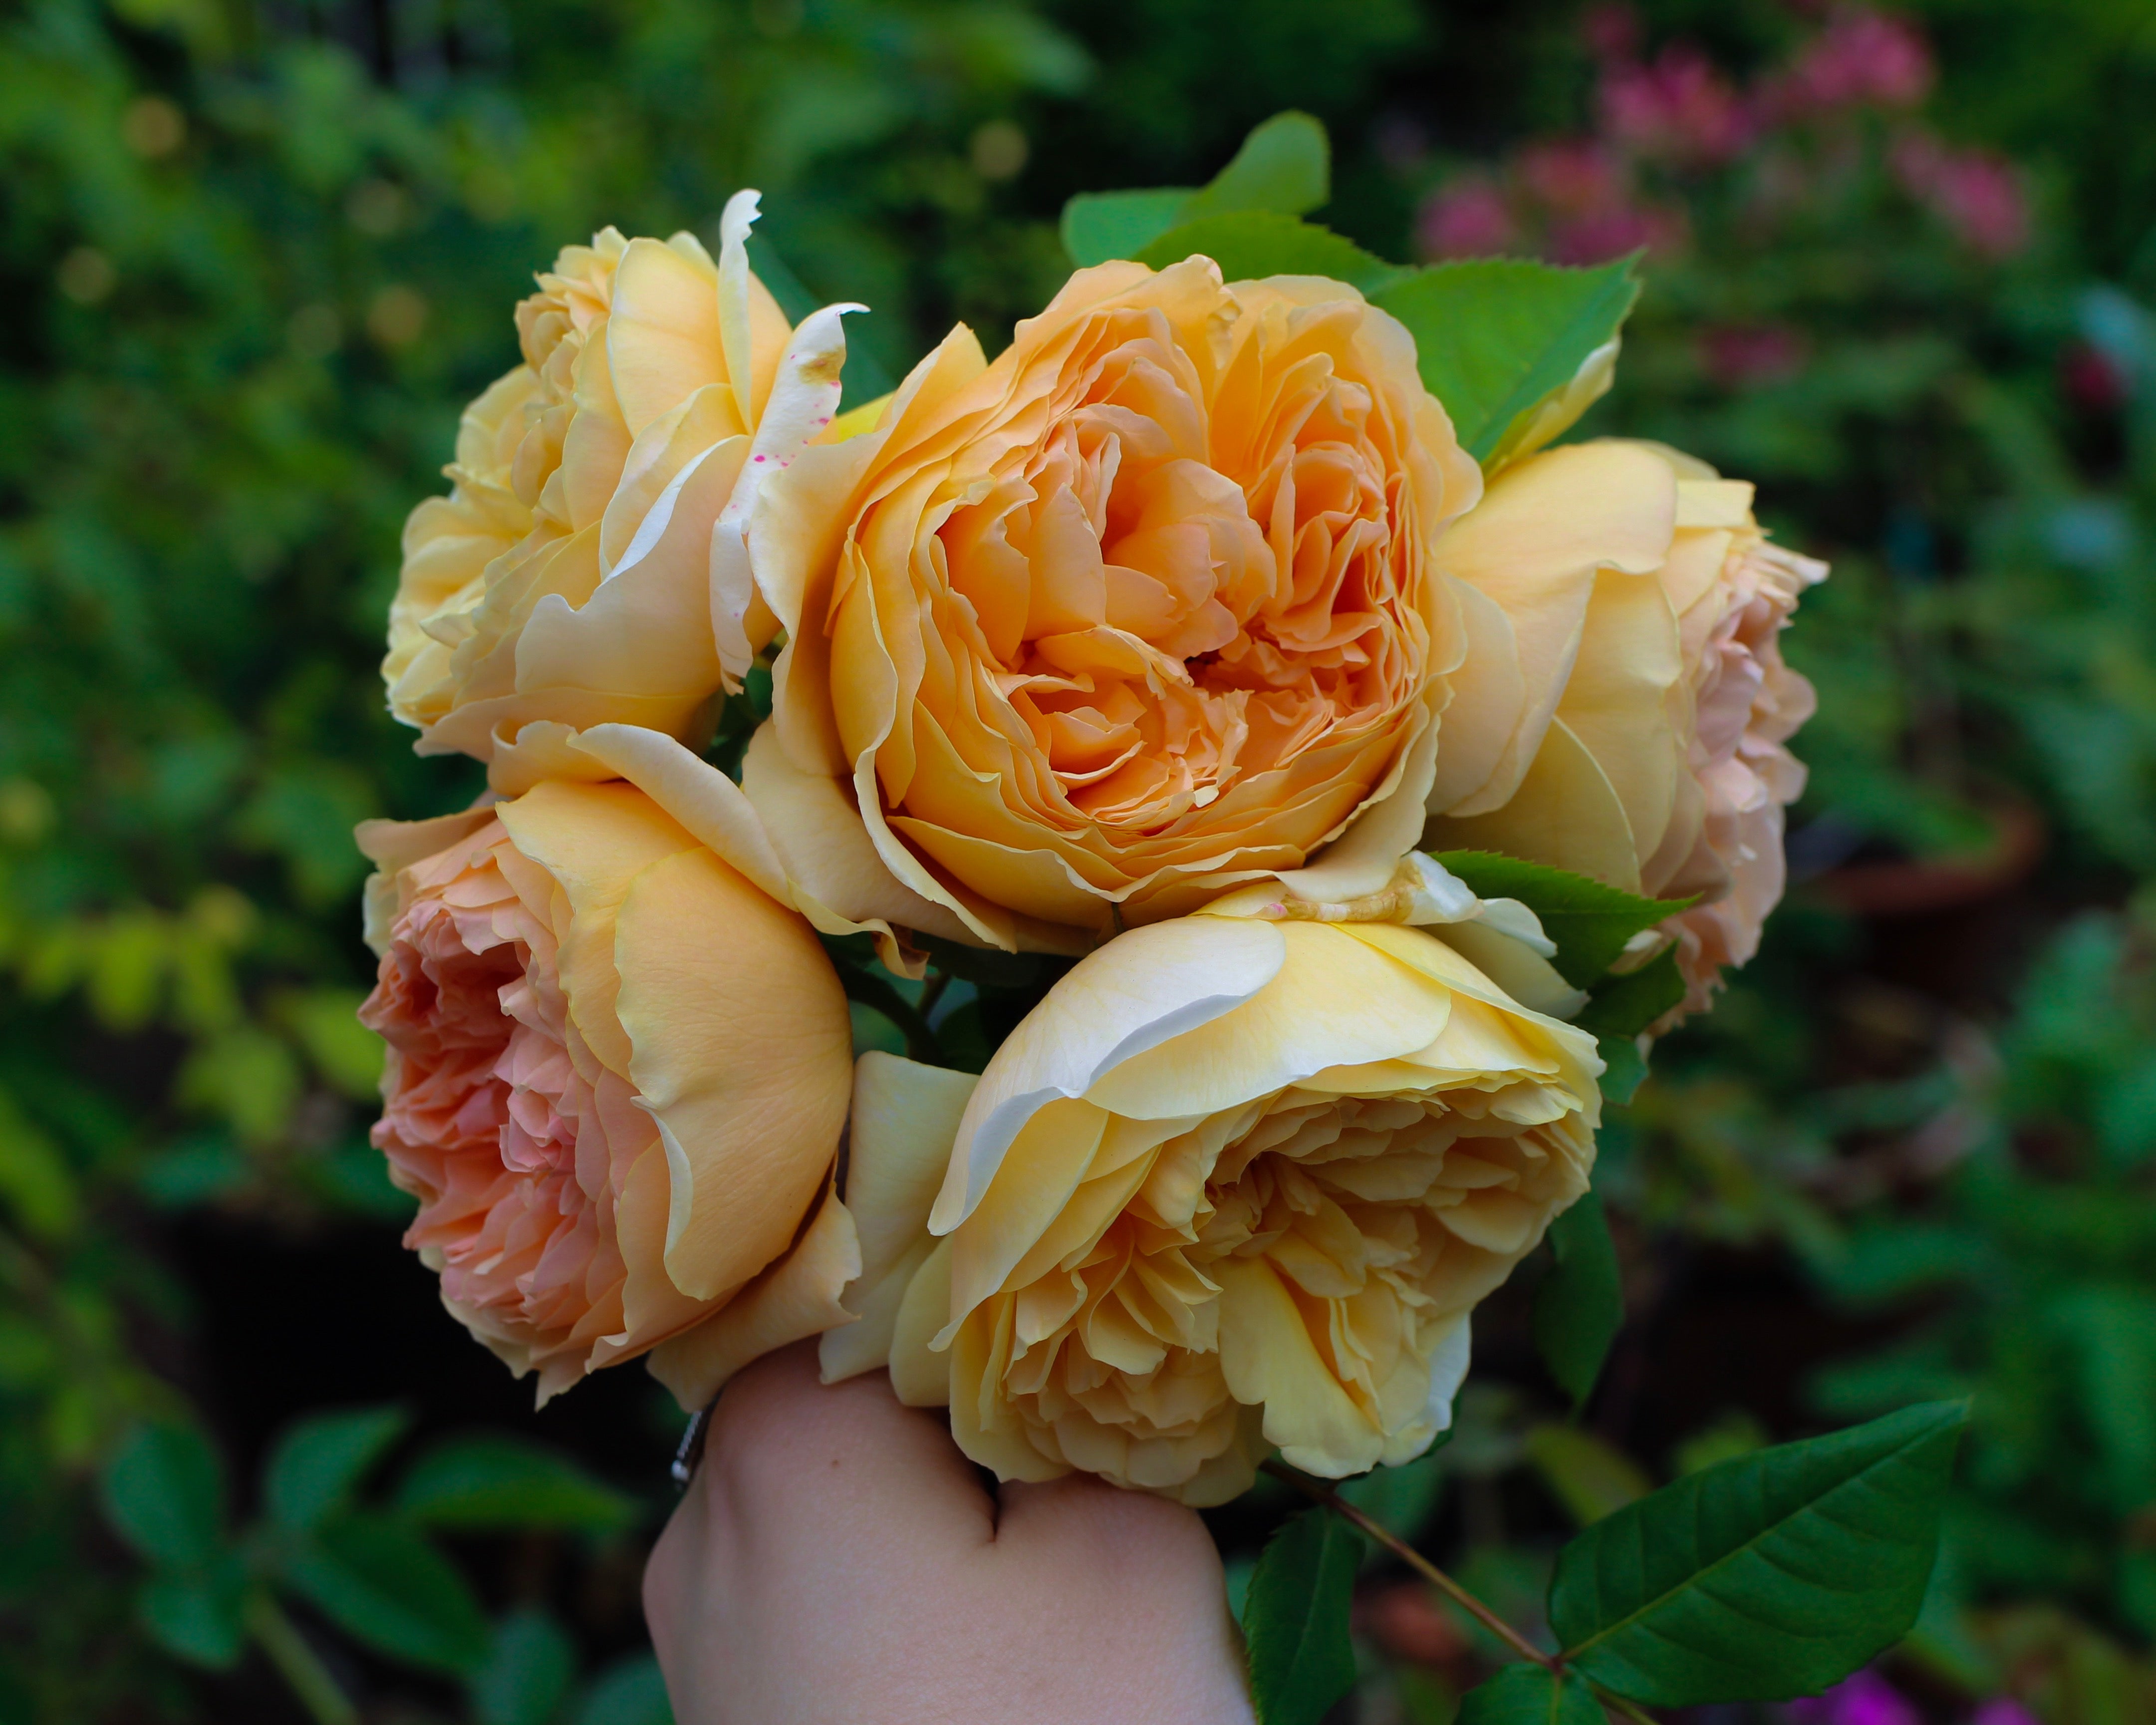 english roses crown princess margareta 